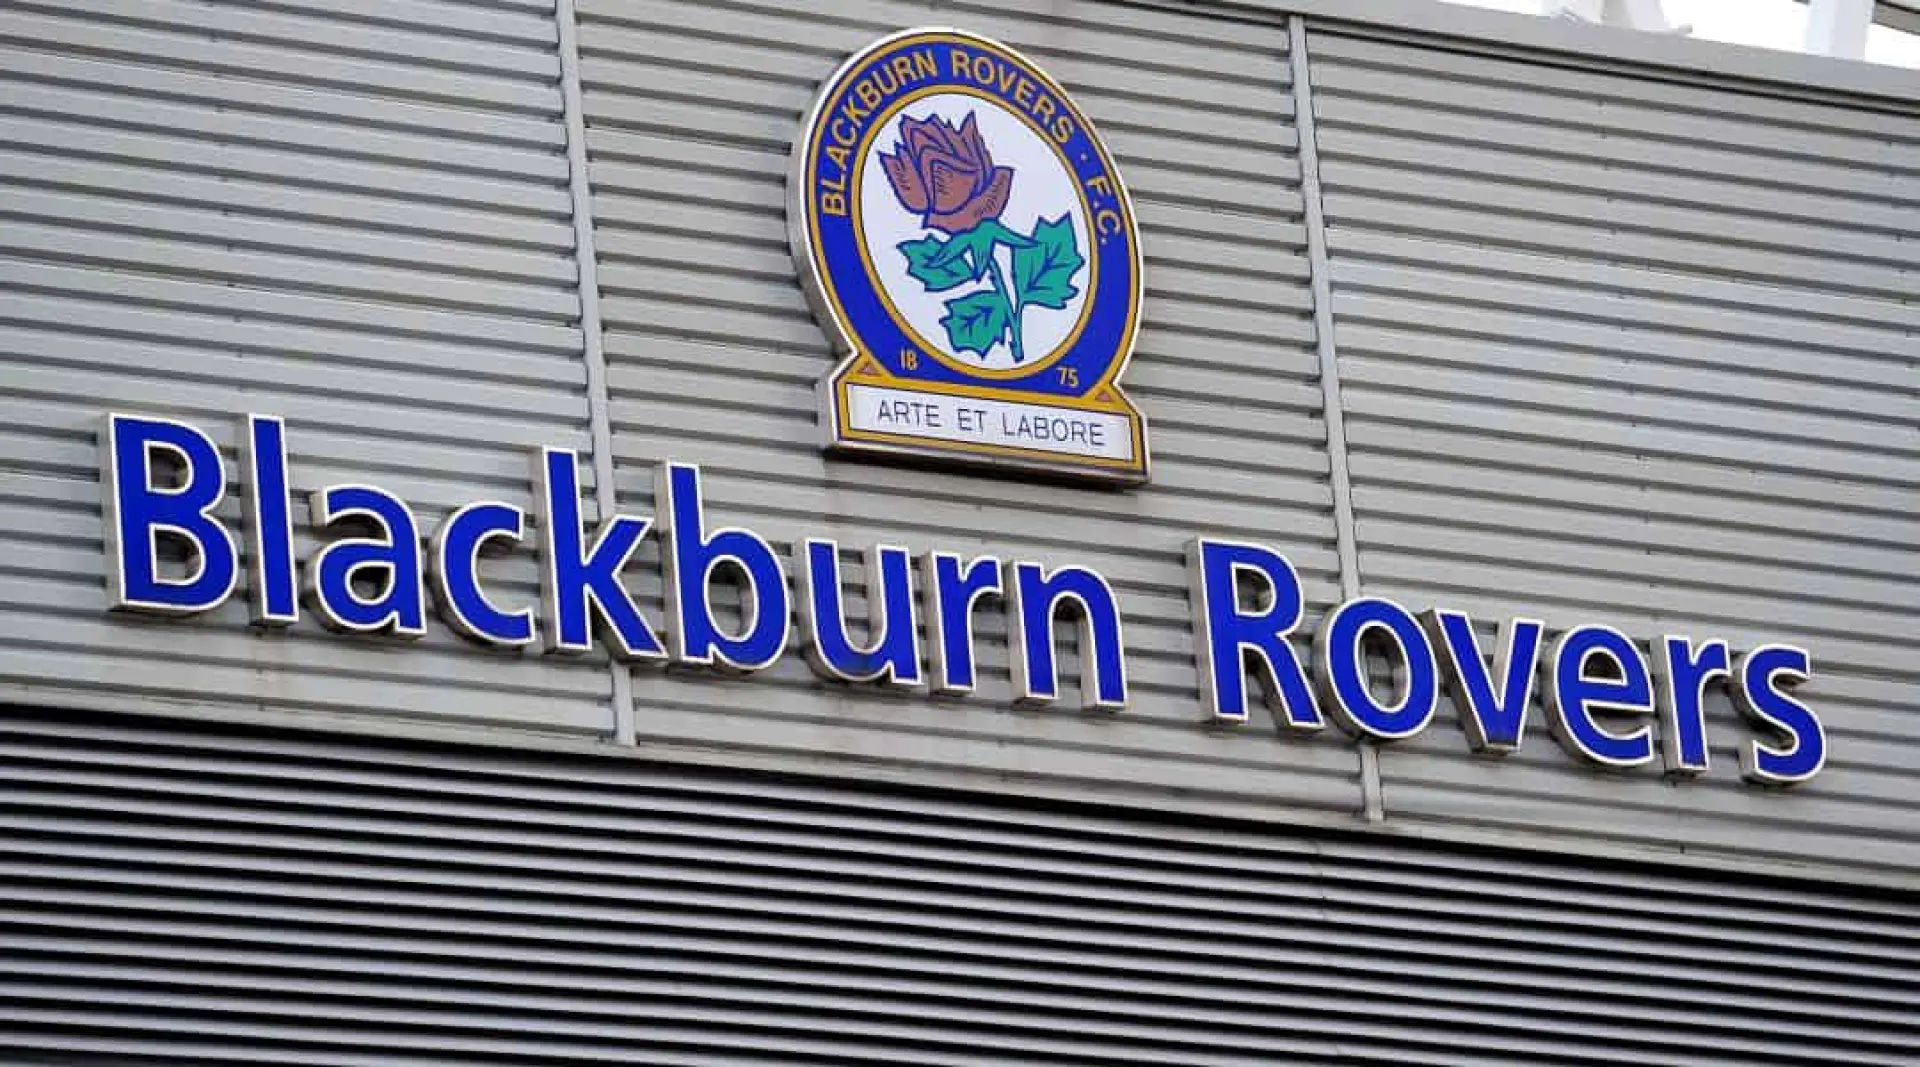 Blackburn betting news